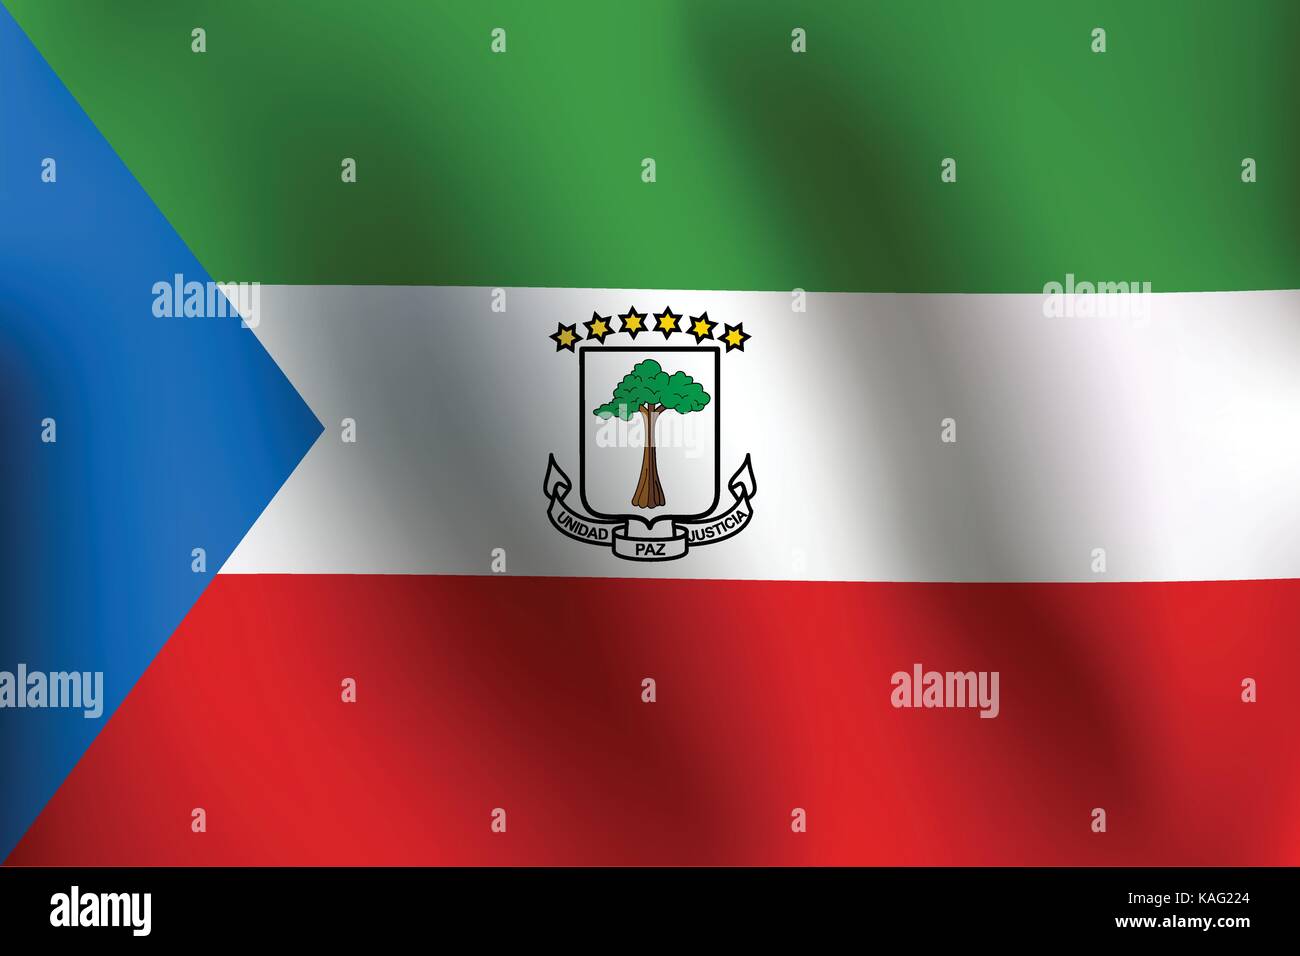 Bandiera della Guinea equatoriale con un po' di sbandieratori, ombreggiatura & Bandiera colori strati separati - Illustrazione Vettoriale Illustrazione Vettoriale